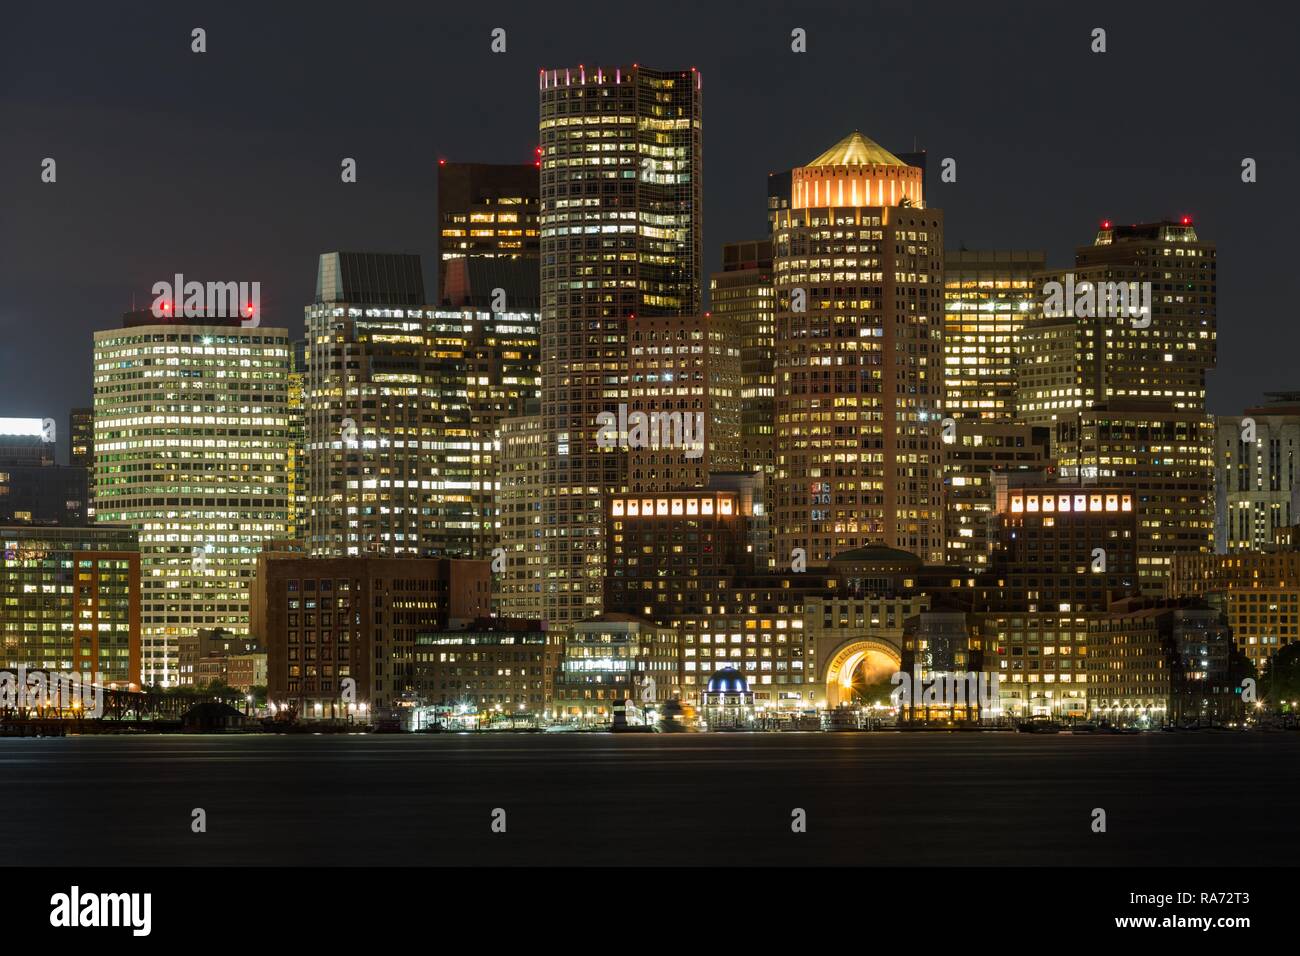 Vistas del perfil de la ciudad de Boston en la noche, rascacielos, delante del canal principal de Boston, Boston, Massachusetts, EE.UU. Foto de stock